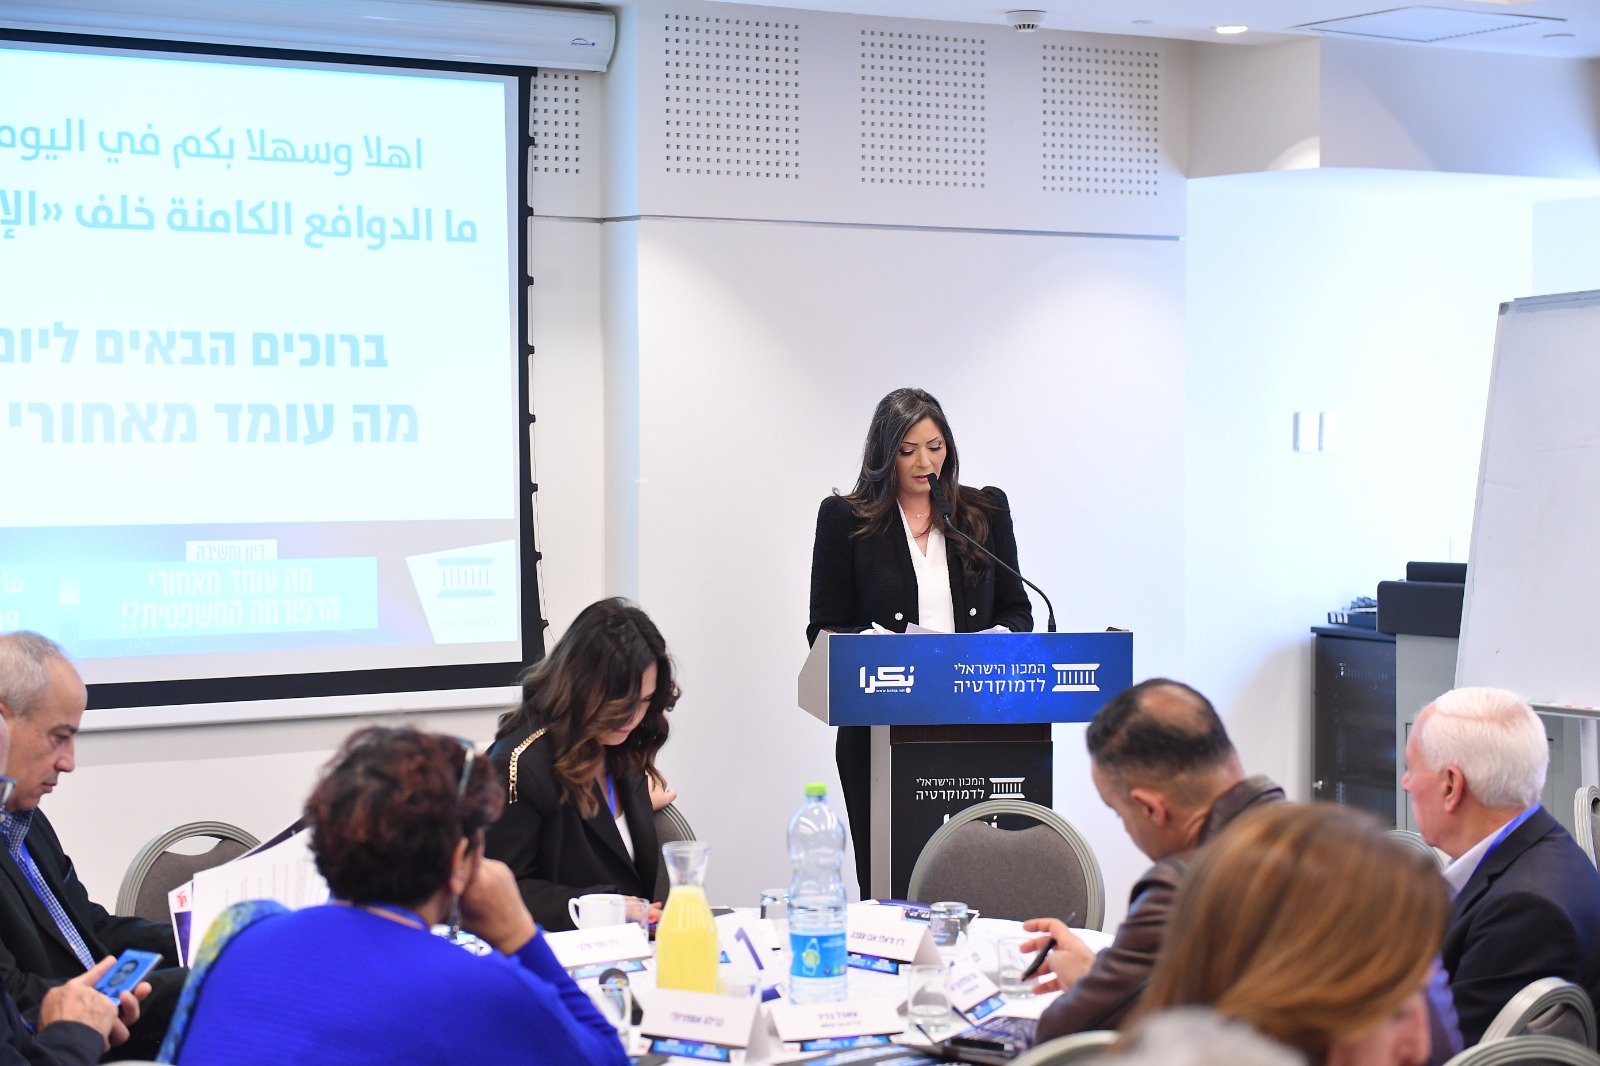 الناصرة: مشاركة واسعة وتصريحات هامة في اليوم الدراسي حول الإصلاح القضائي-11